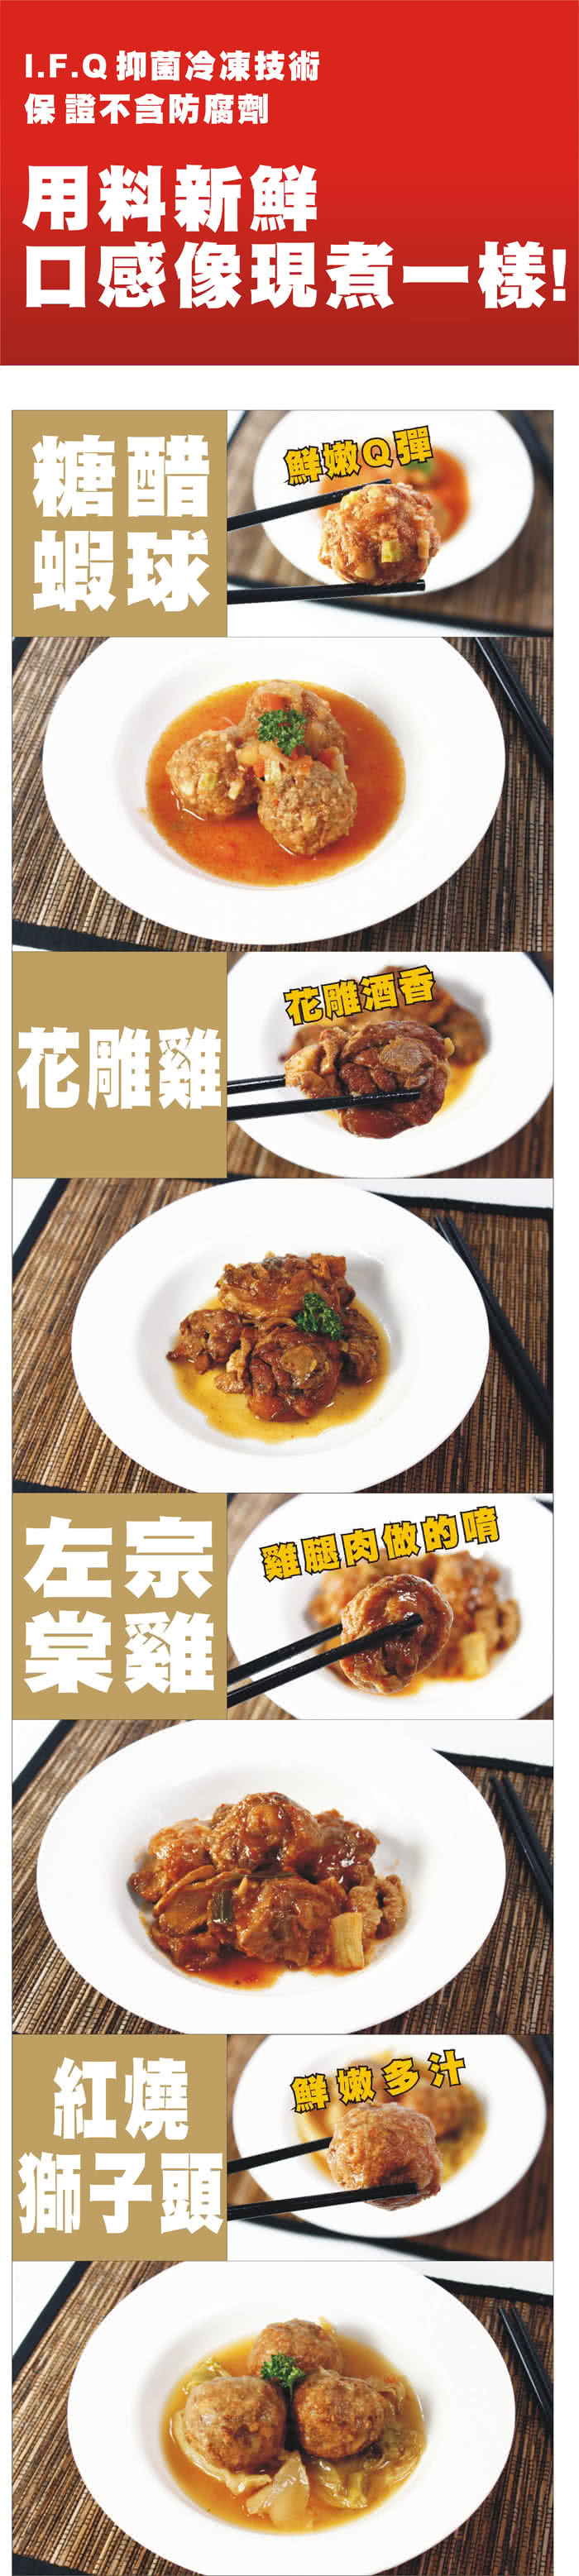 【快樂大廚】五星級料理美食8包組(4種口味任選)